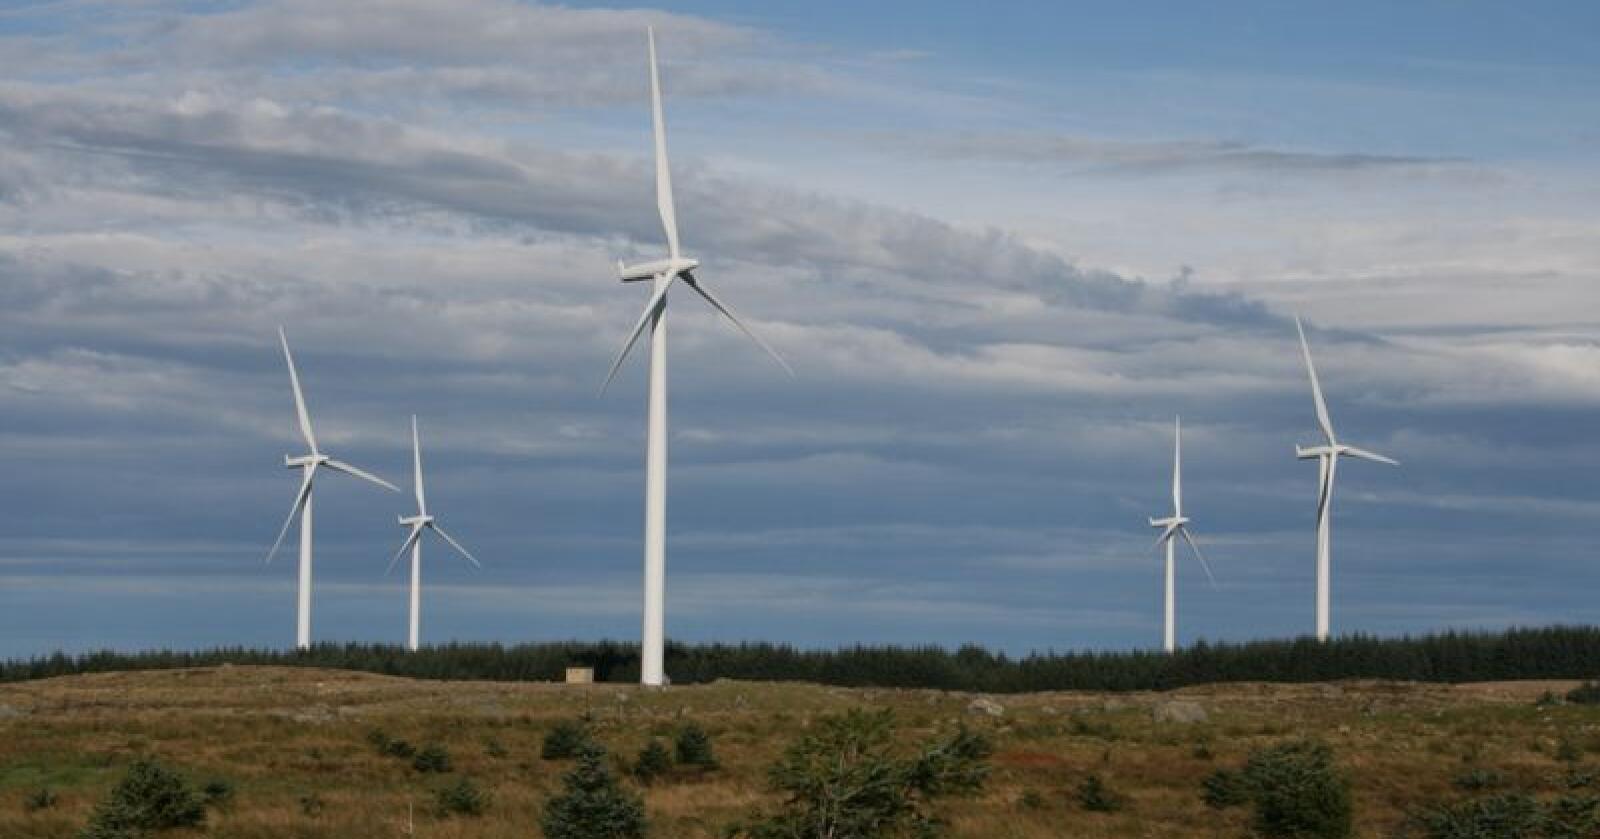 Vindmøller på Høg-Jæren i Rogaland, som er ein av dei største vindkraftparkane i landet. Foto: Bjarne Bekkeheien Aase